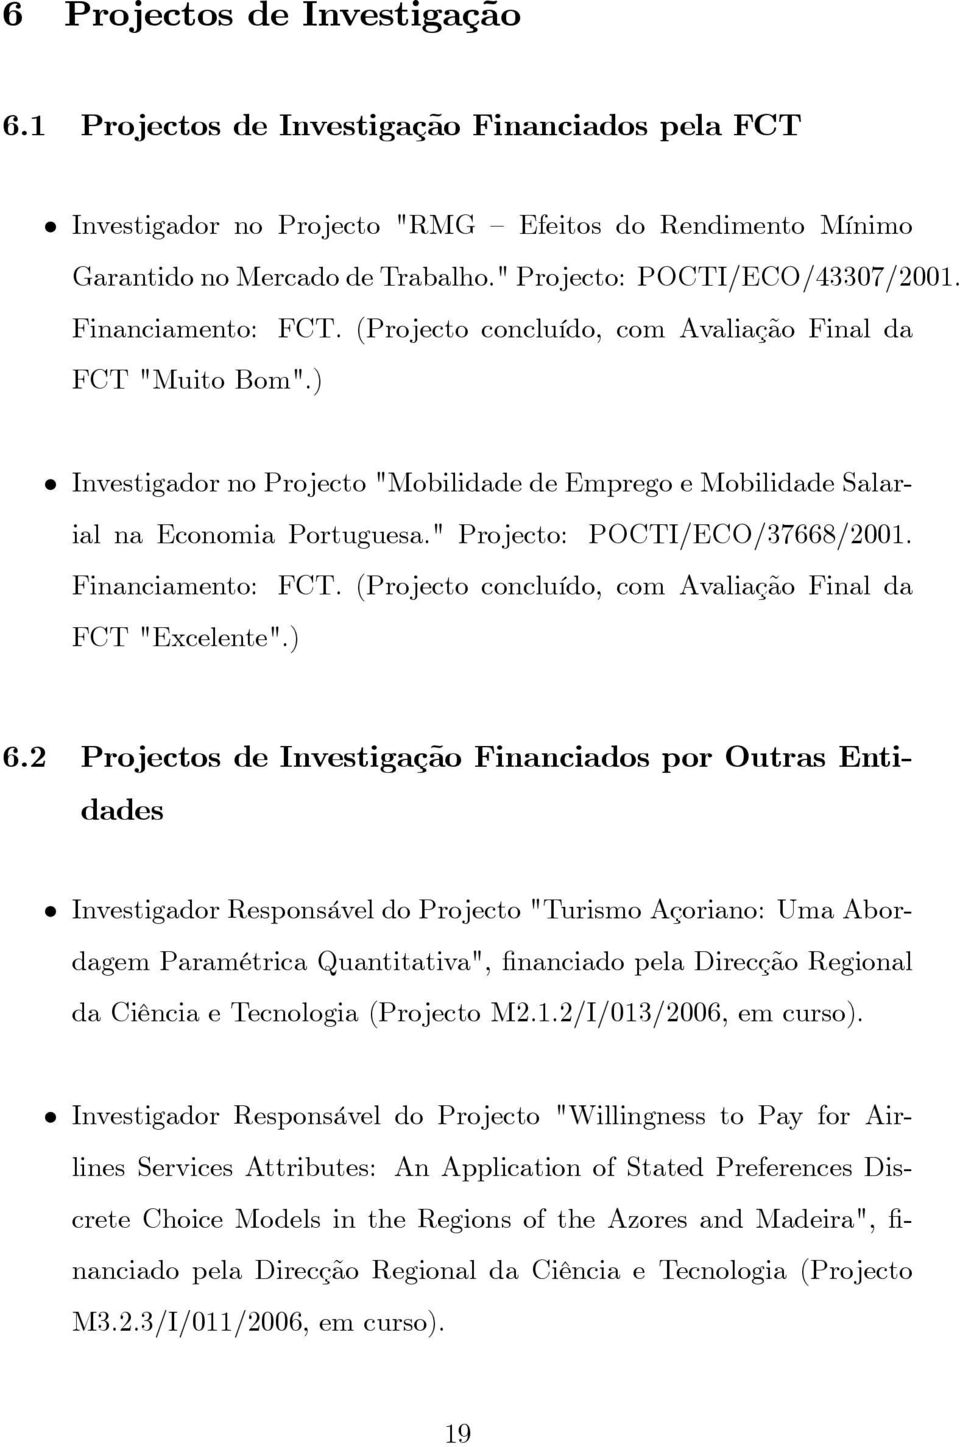 ) Investigador no Projecto "Mobilidade de Emprego e Mobilidade Salarial na Economia Portuguesa." Projecto: POCTI/ECO/37668/2001. Financiamento: FCT.